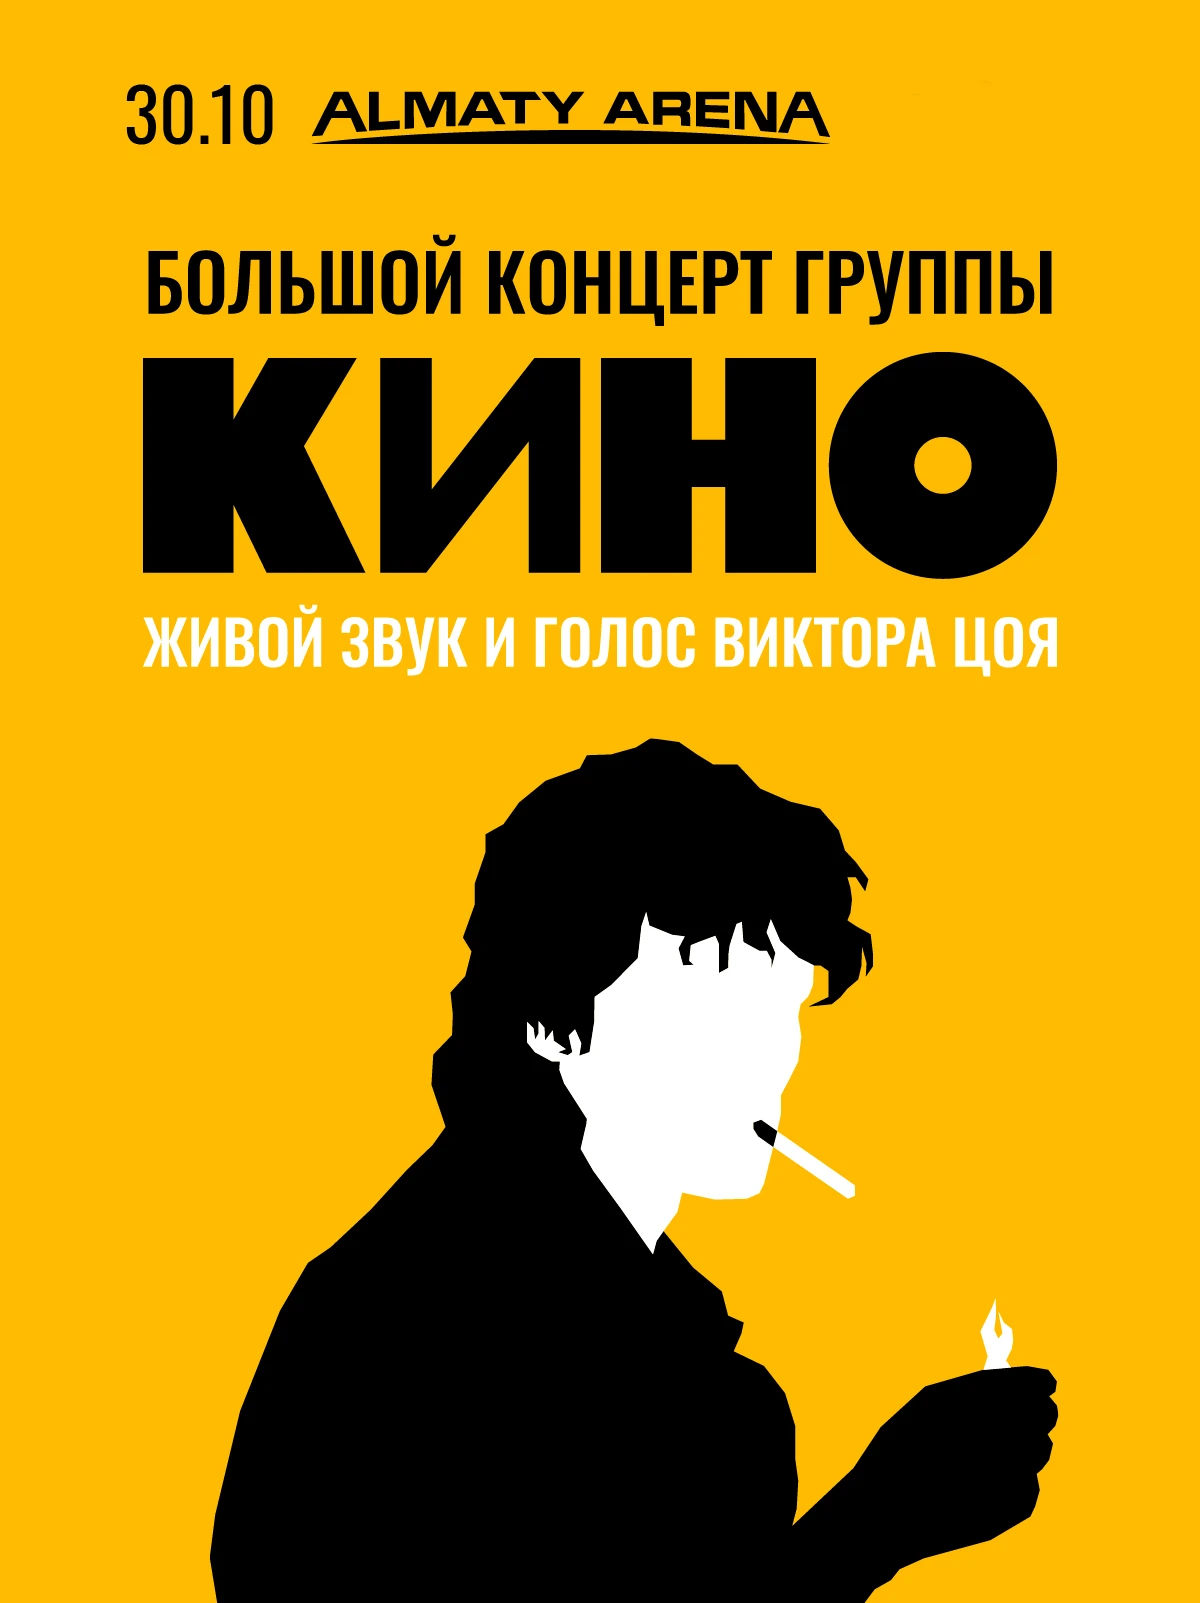 Группа Кино в Алматы — Заказ билетов на мероприятия ZAKAZBILETOV.KZ